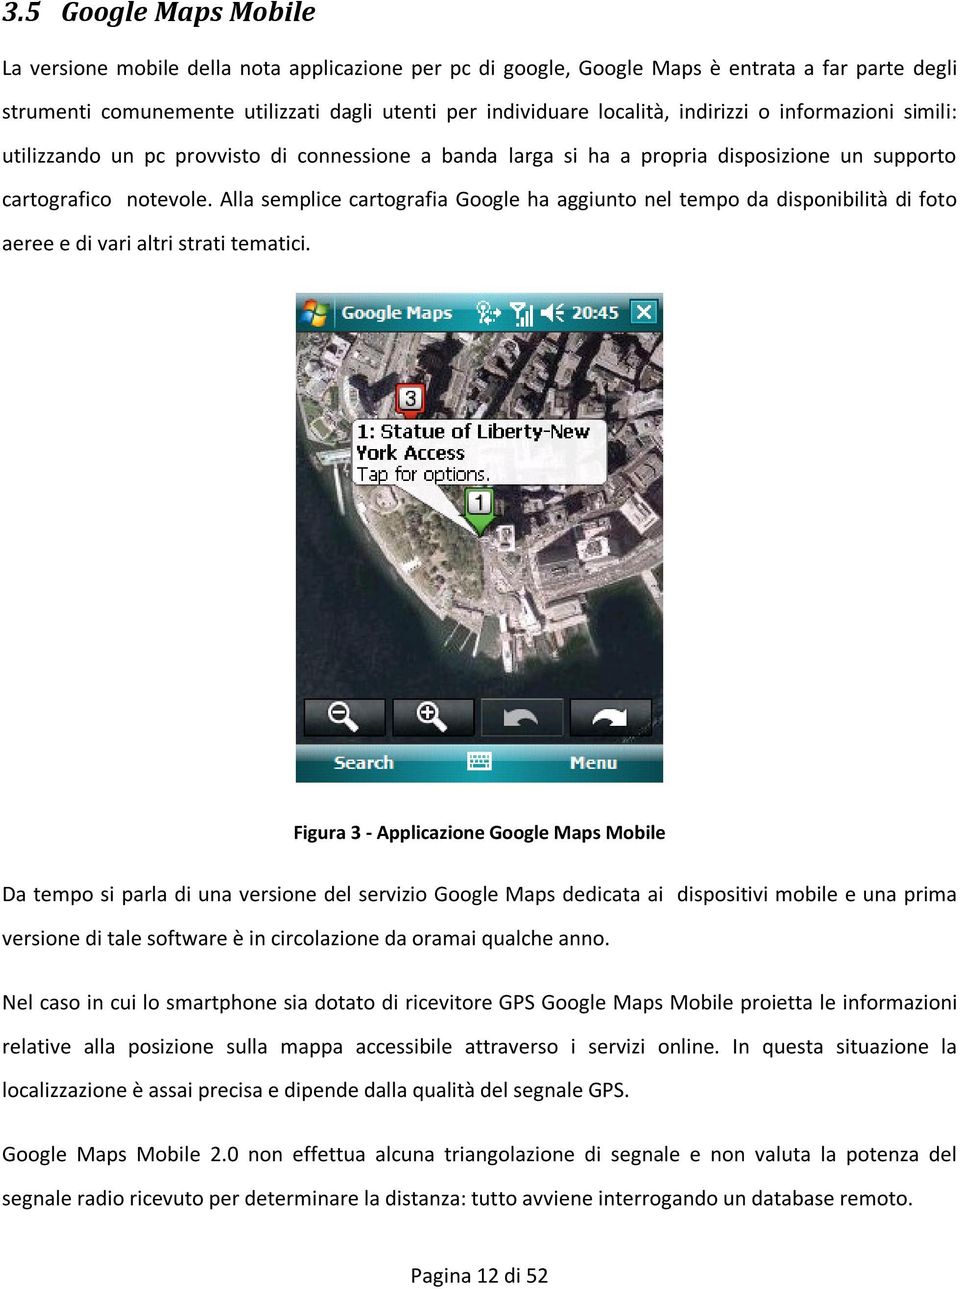 Alla semplice cartografia Google ha aggiunto nel tempo da disponibilità di foto aeree e di vari altri strati tematici.